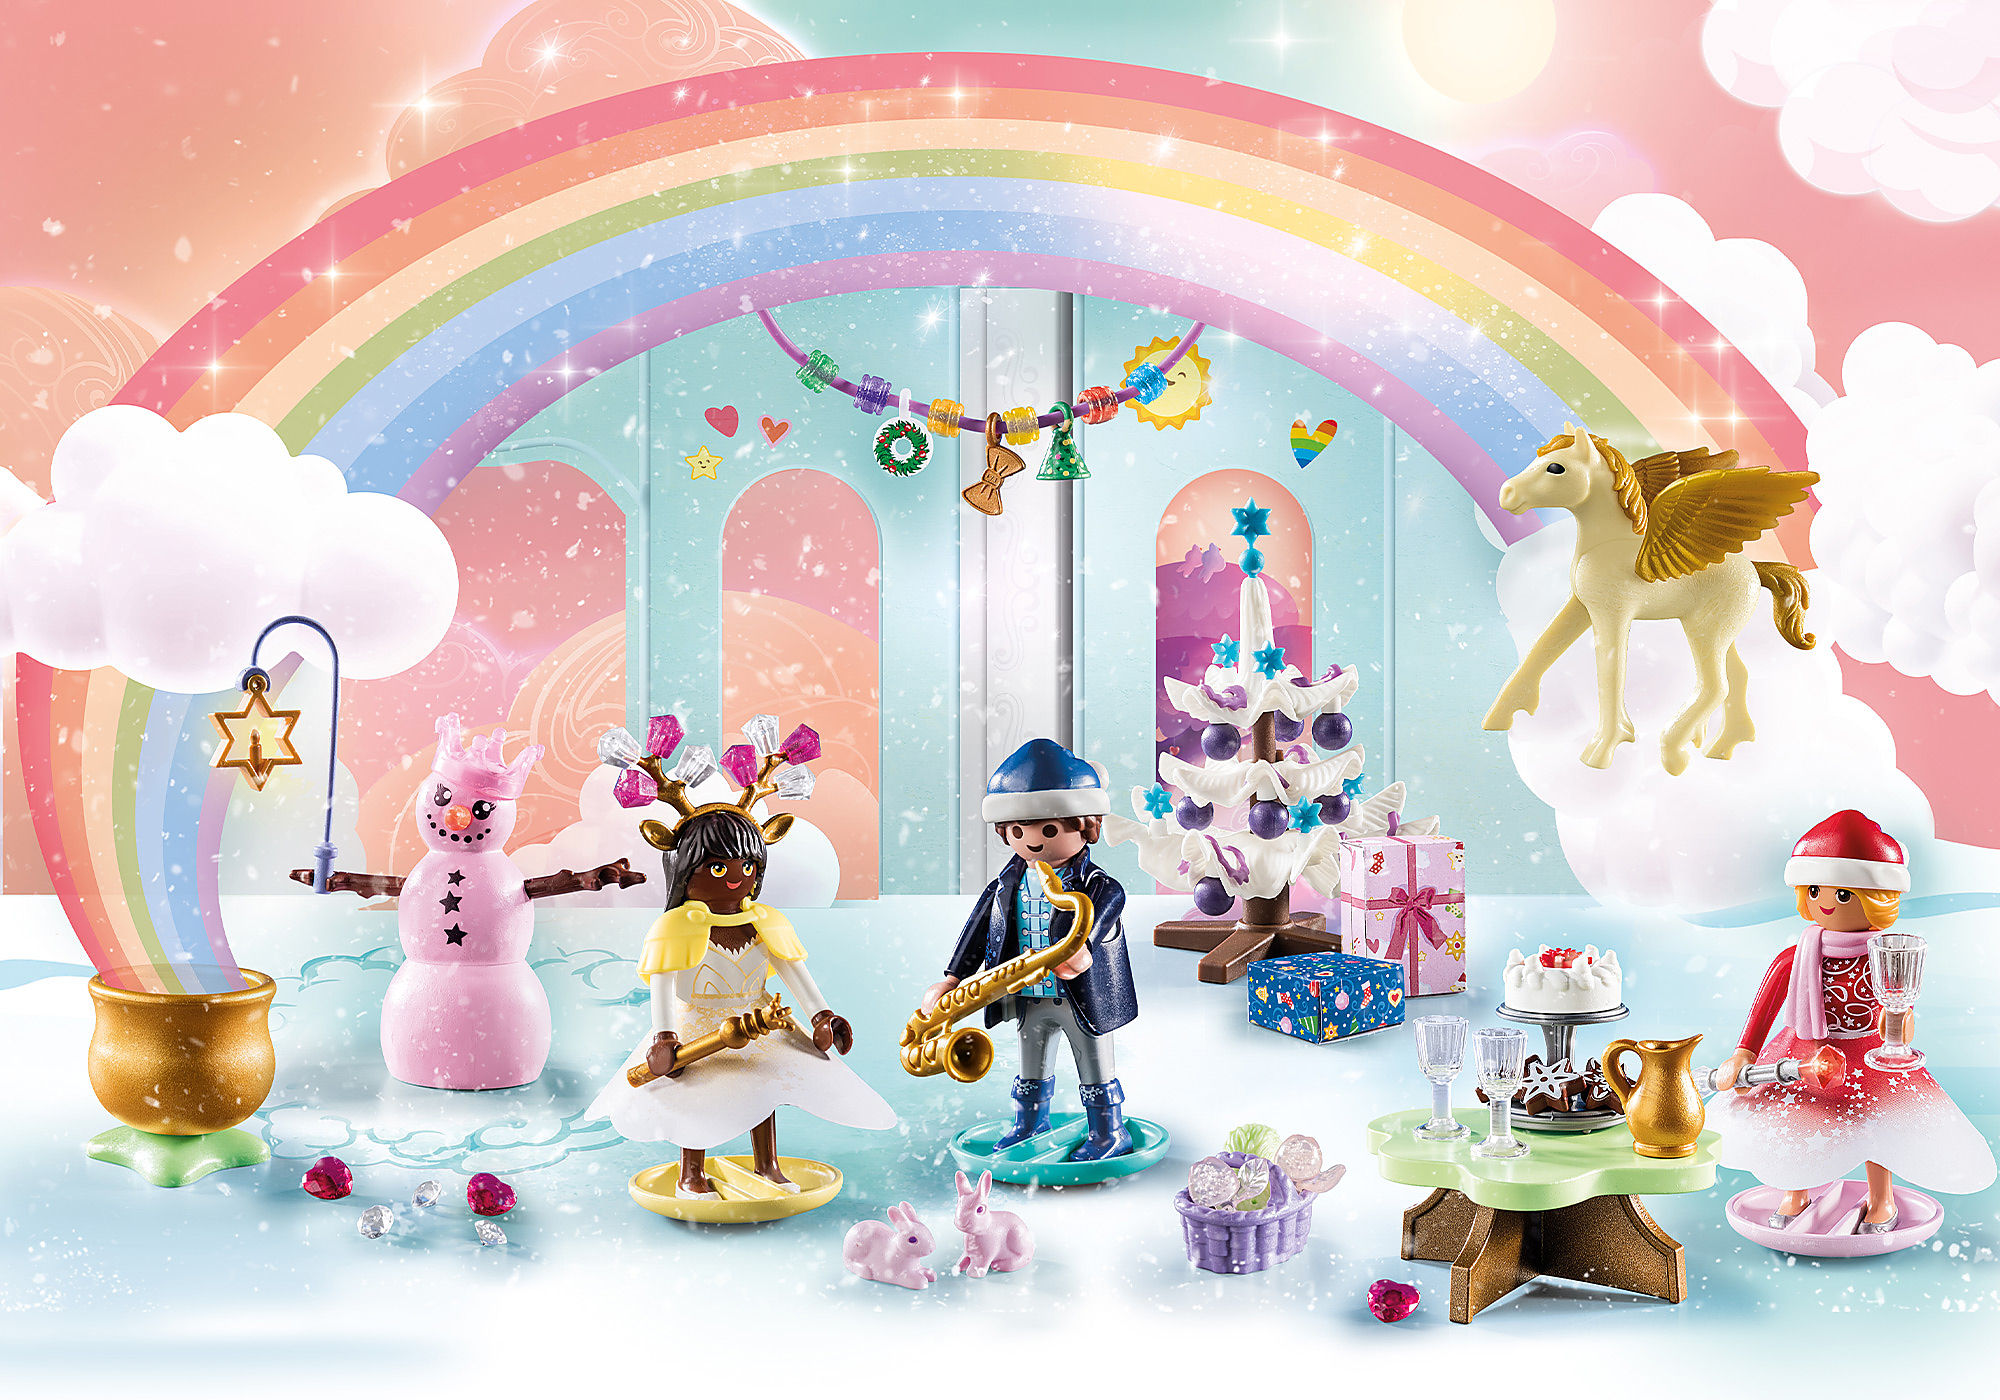 Calendrier de l'avent Arc-en-ciel - Playmobil Princesse 71348 - La